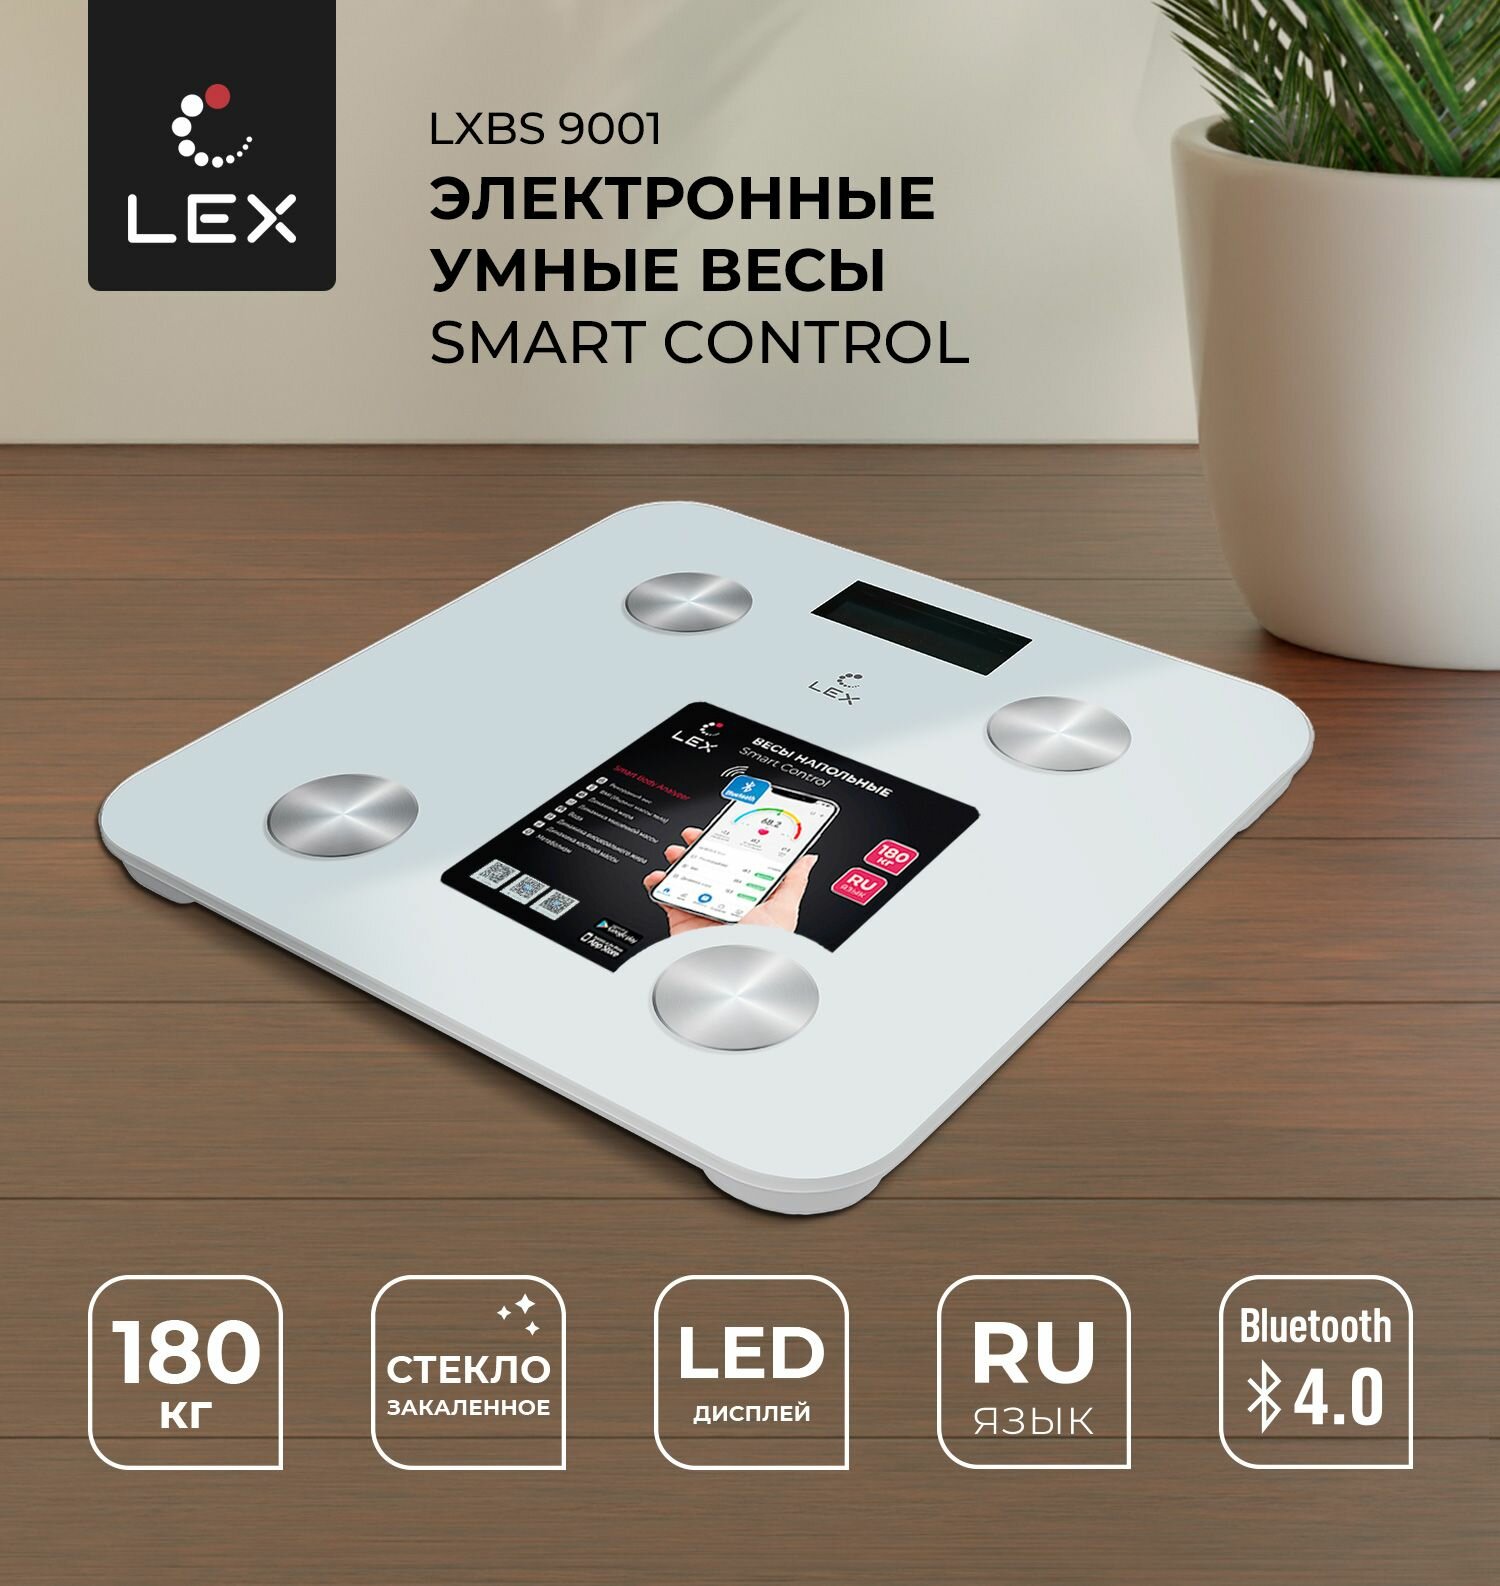 Напольные электронные умные весы LEX LXBS 9001, SMART CONTROL, стеклянные, до 180кг, Bluetooth - фотография № 1